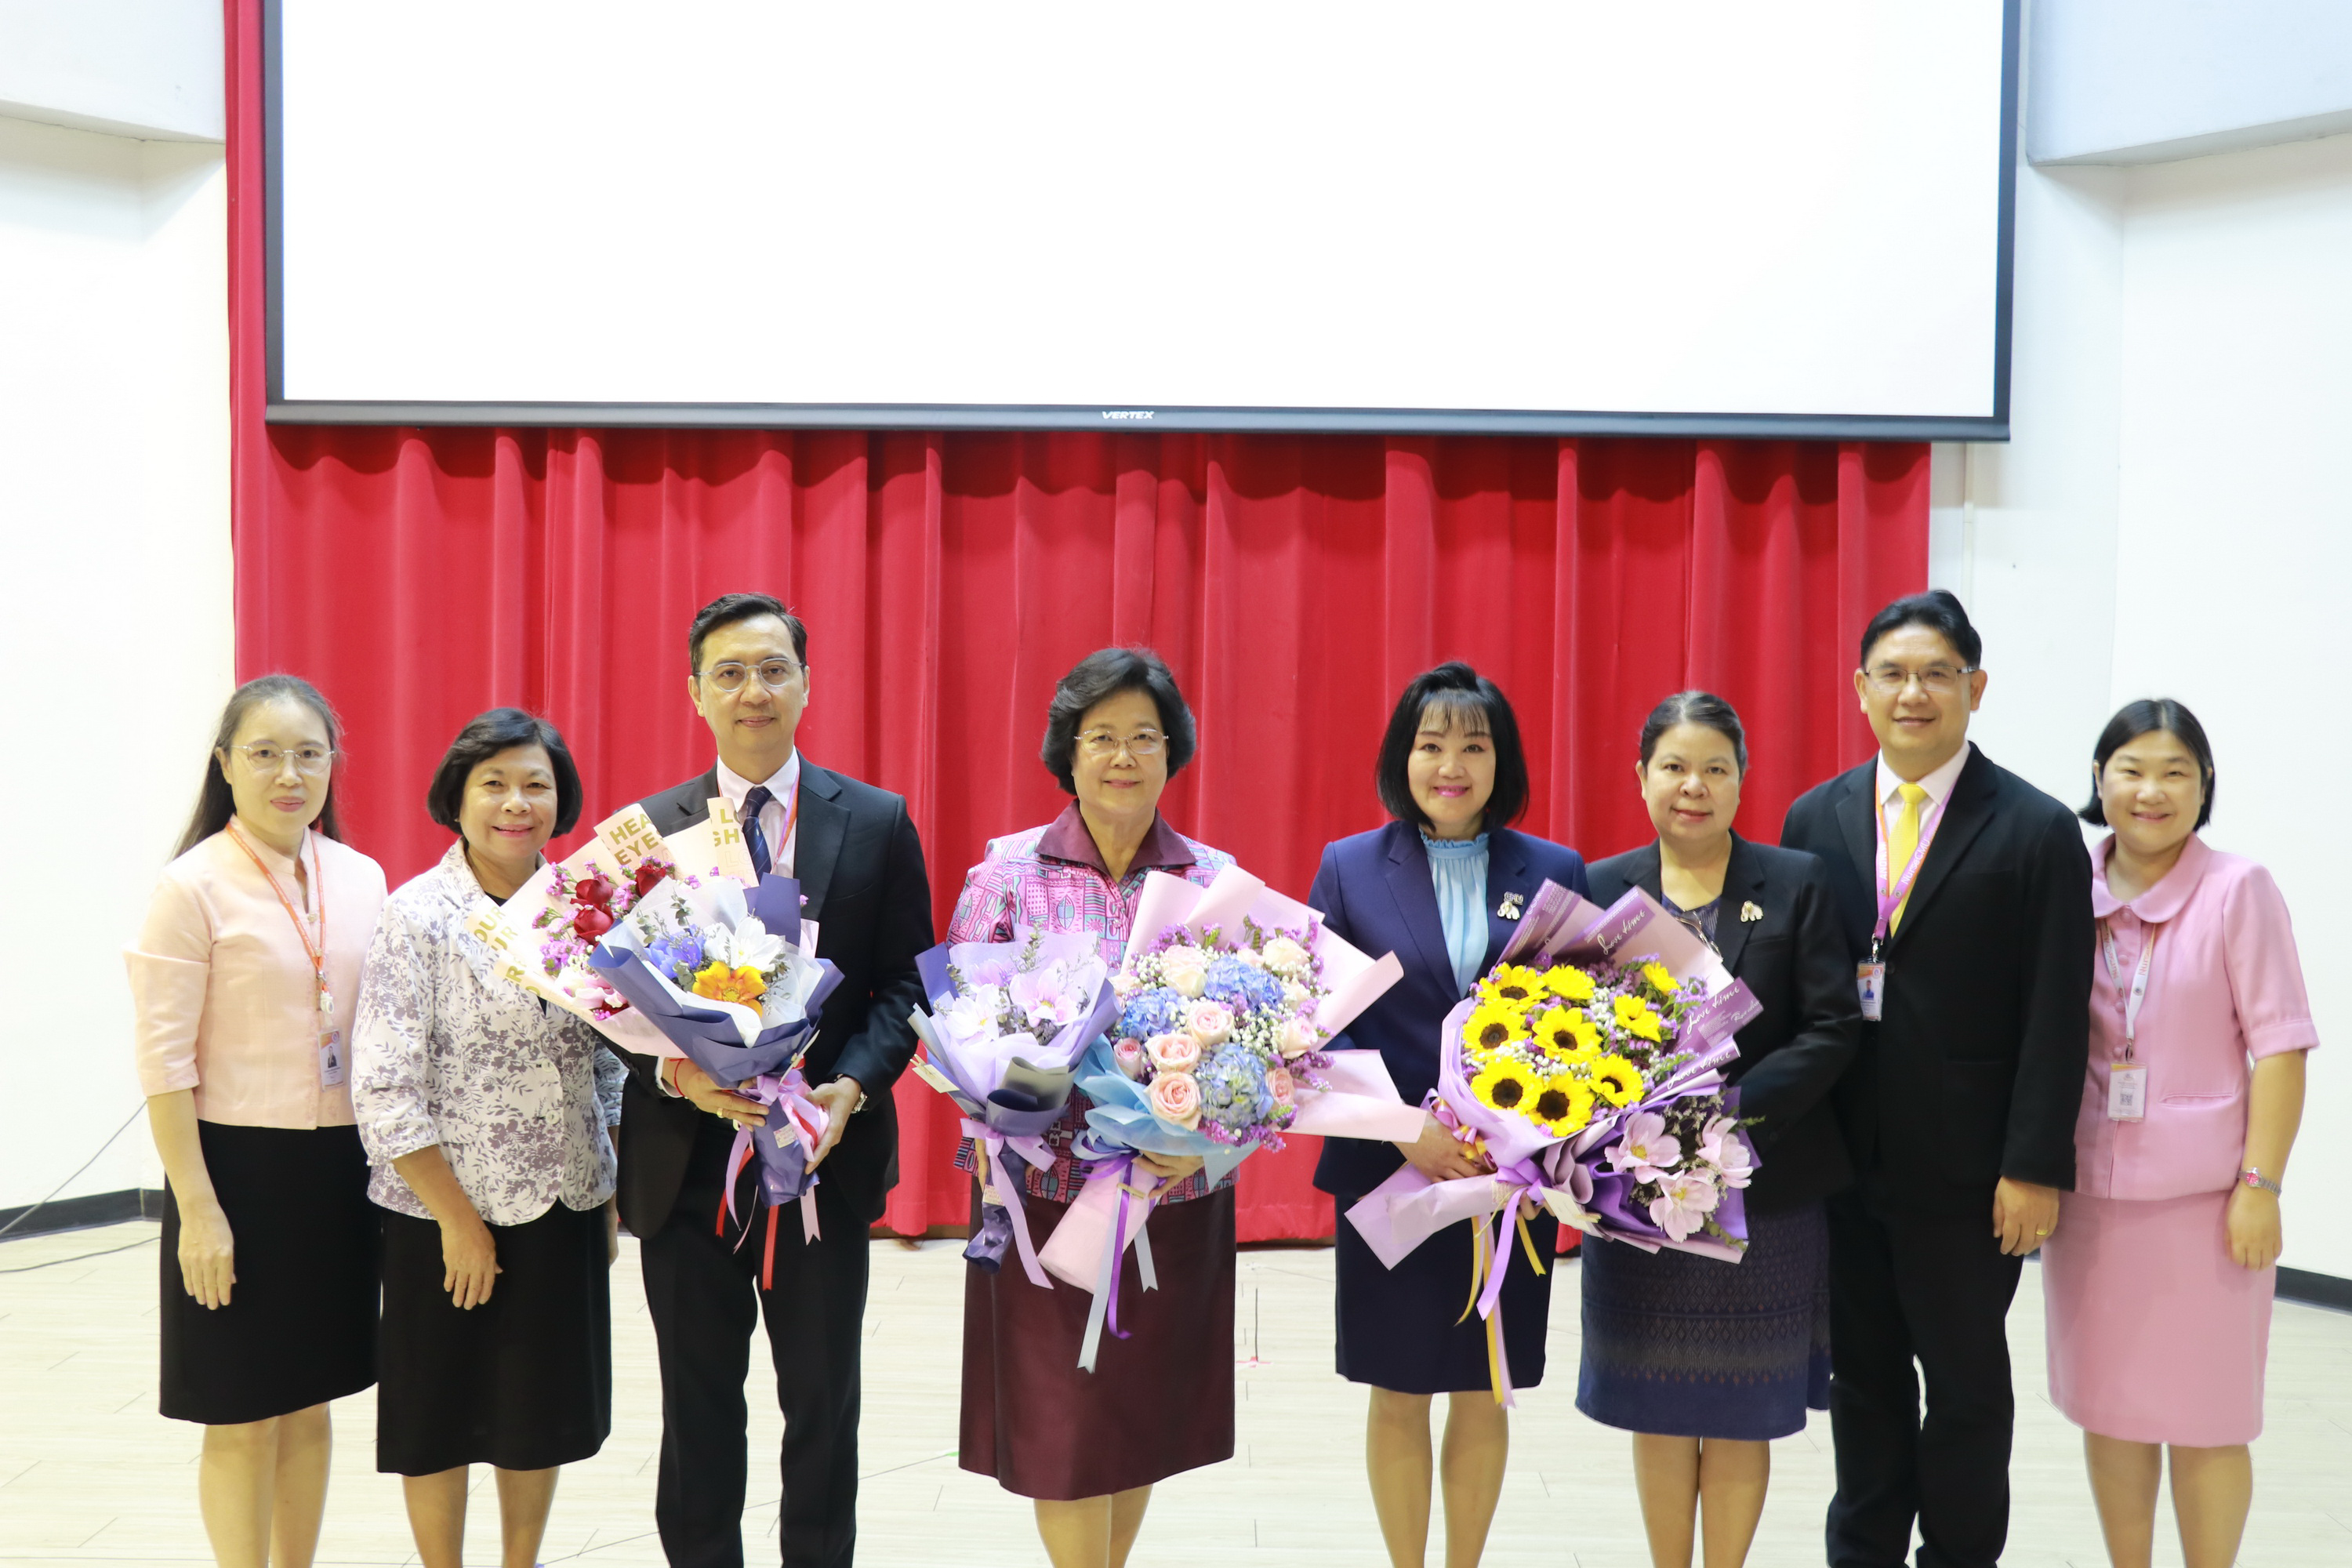 
	มอบช่อดอกไม้ร่วมแสดงความยินดีกับรางวัลนักศึกษาเก่ามหาวิทยาลัยเชียงใหม่ดีเด่น ประจำปี 2566
